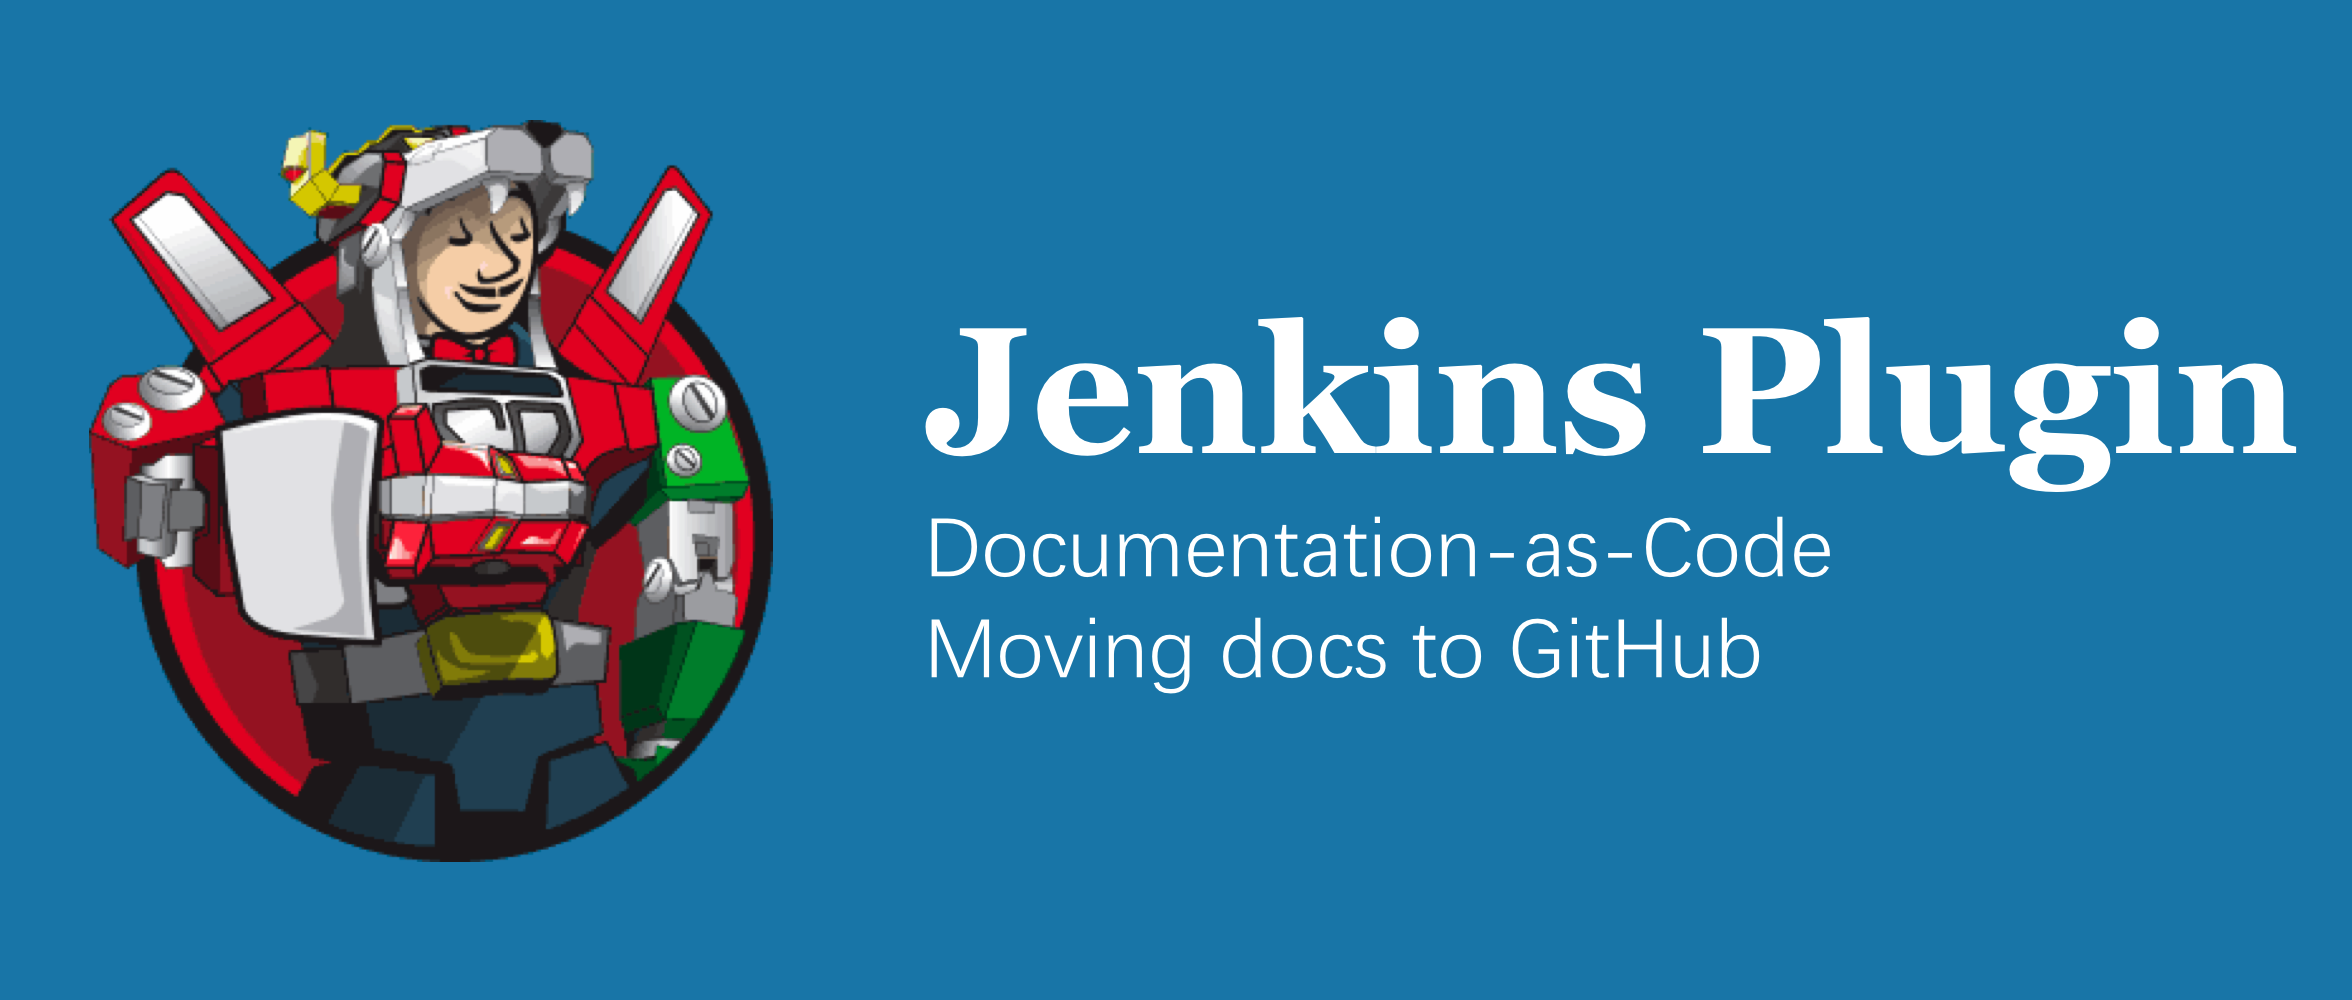 jenkins-plugin-docs-to-github